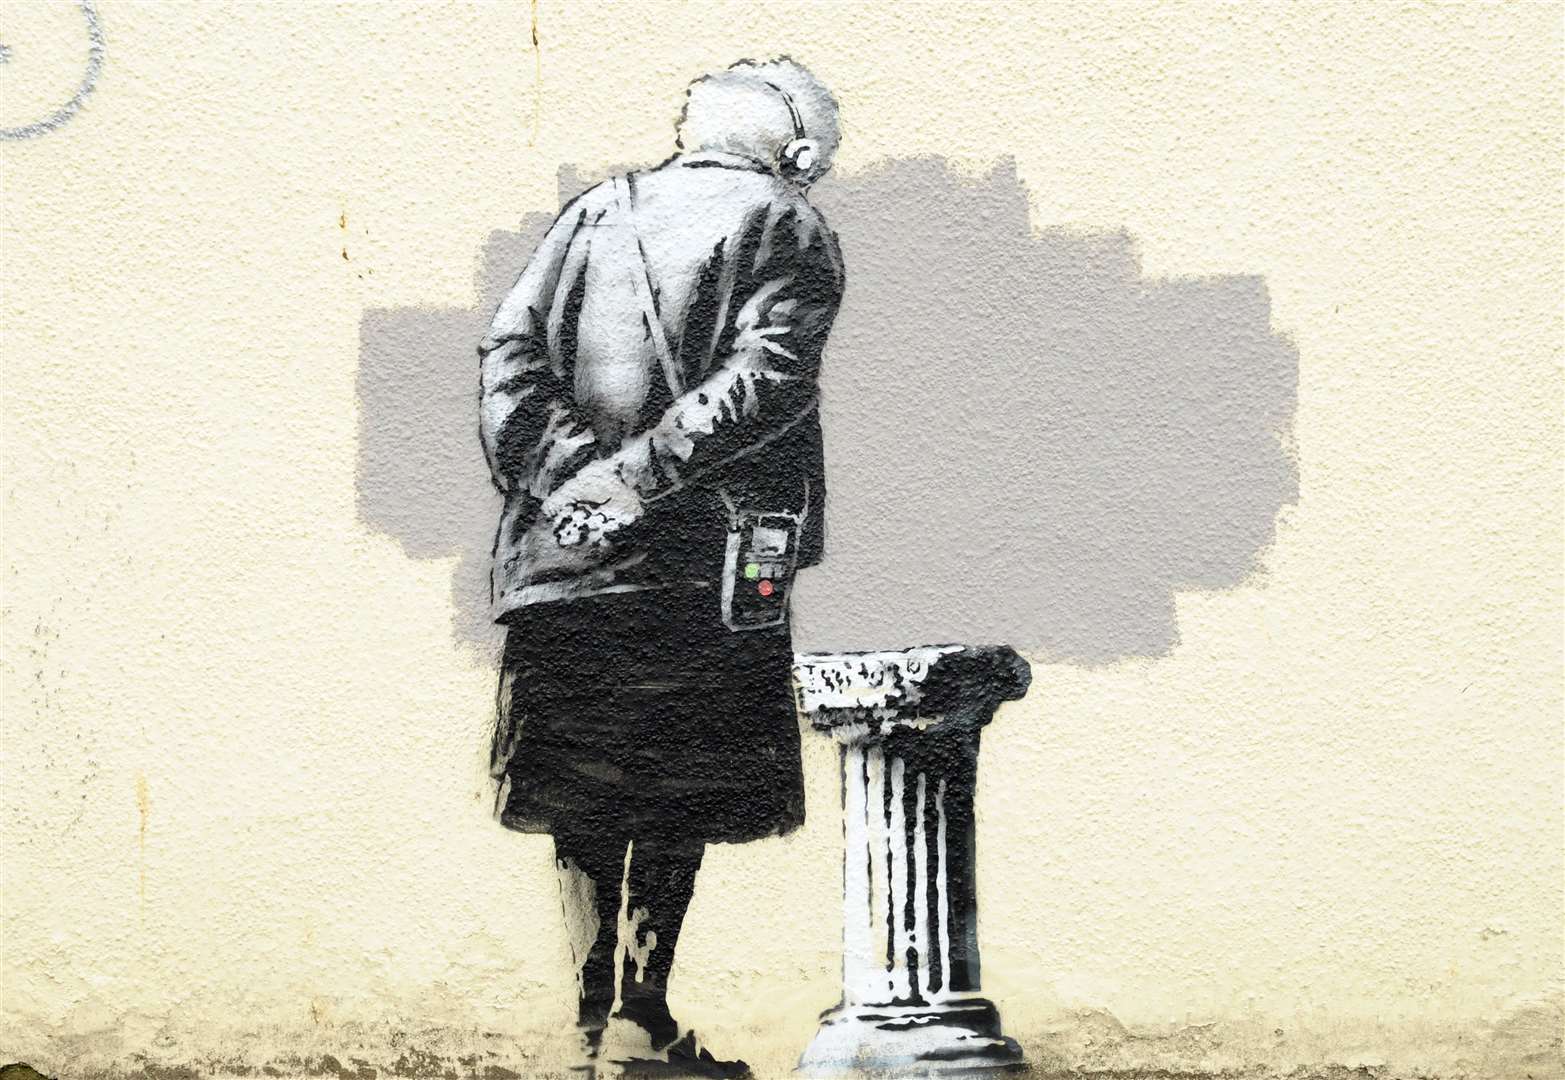 The famous Banksy appeared in Folkestone in 2014